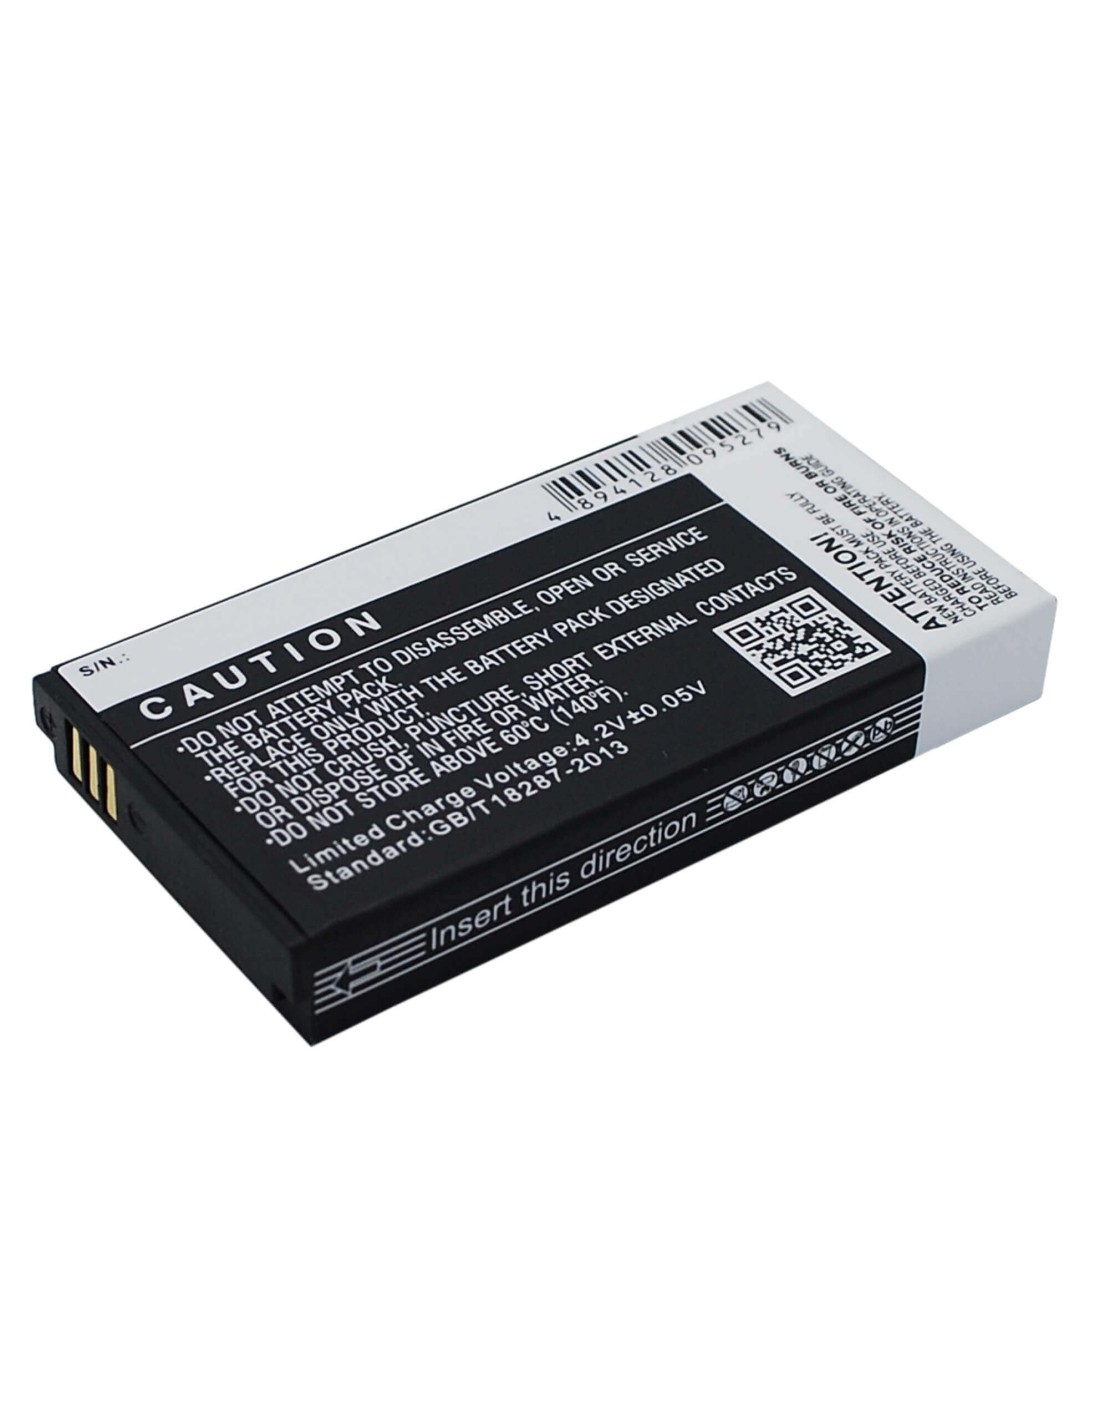 Battery for KAZAM Life R5 3.7V, 2500mAh - 9.25Wh